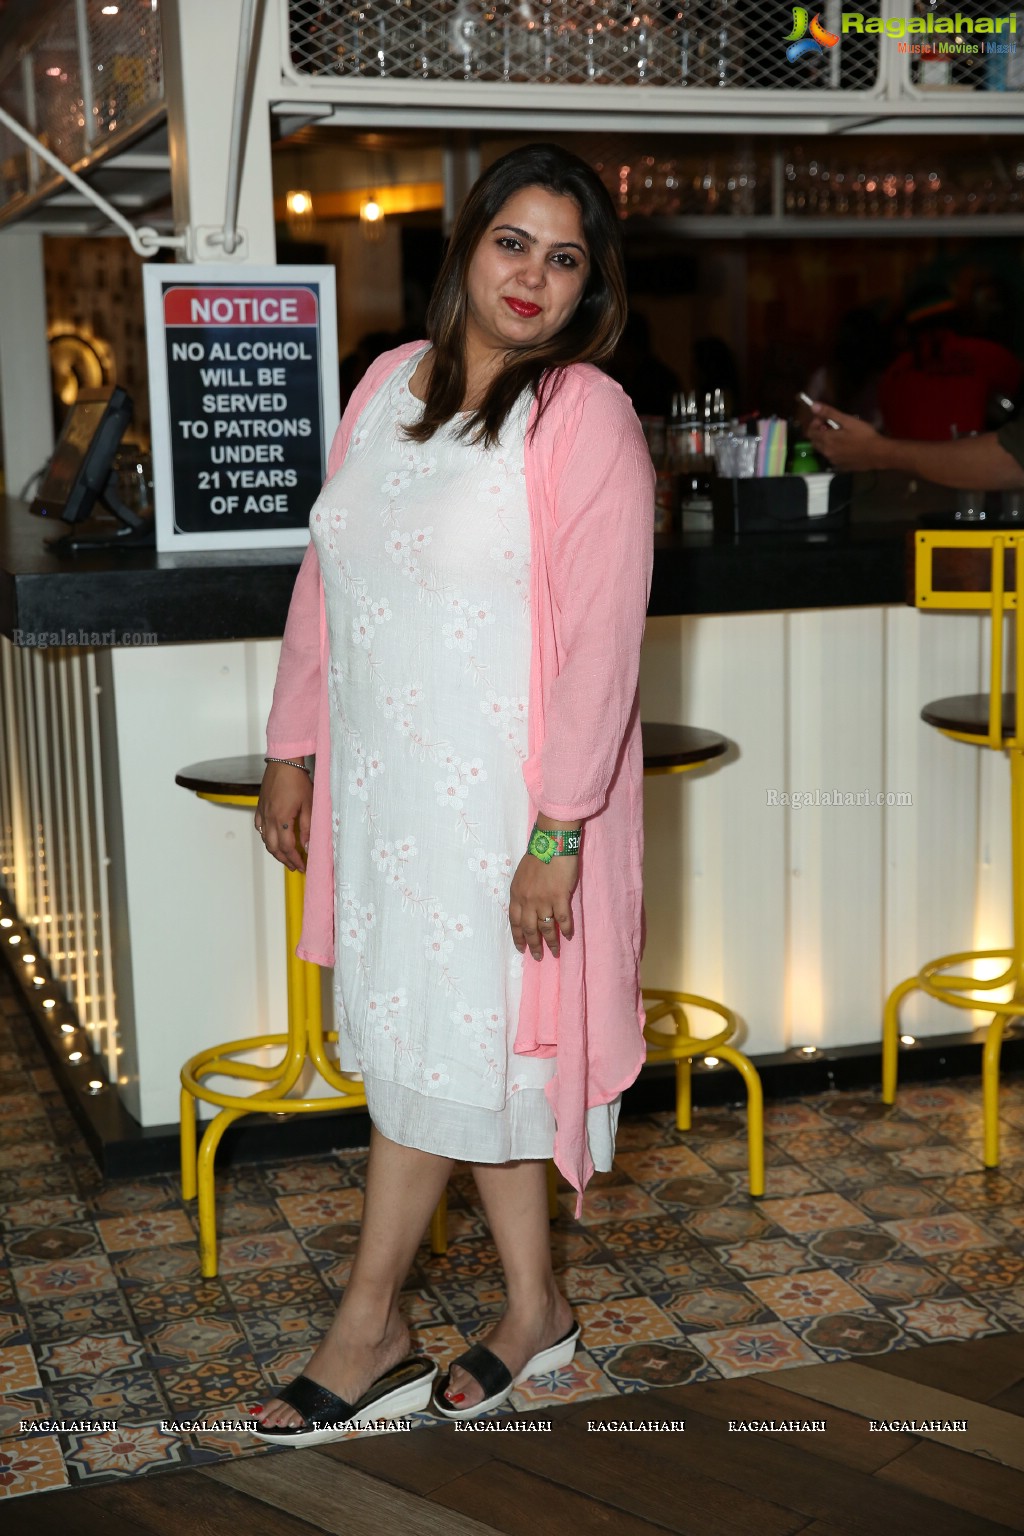 Manju Aggarwal Birthday Bash at Raasta Cafe, Jubilee Hills 2018 at Raasta Cafe, Jubilee Hills